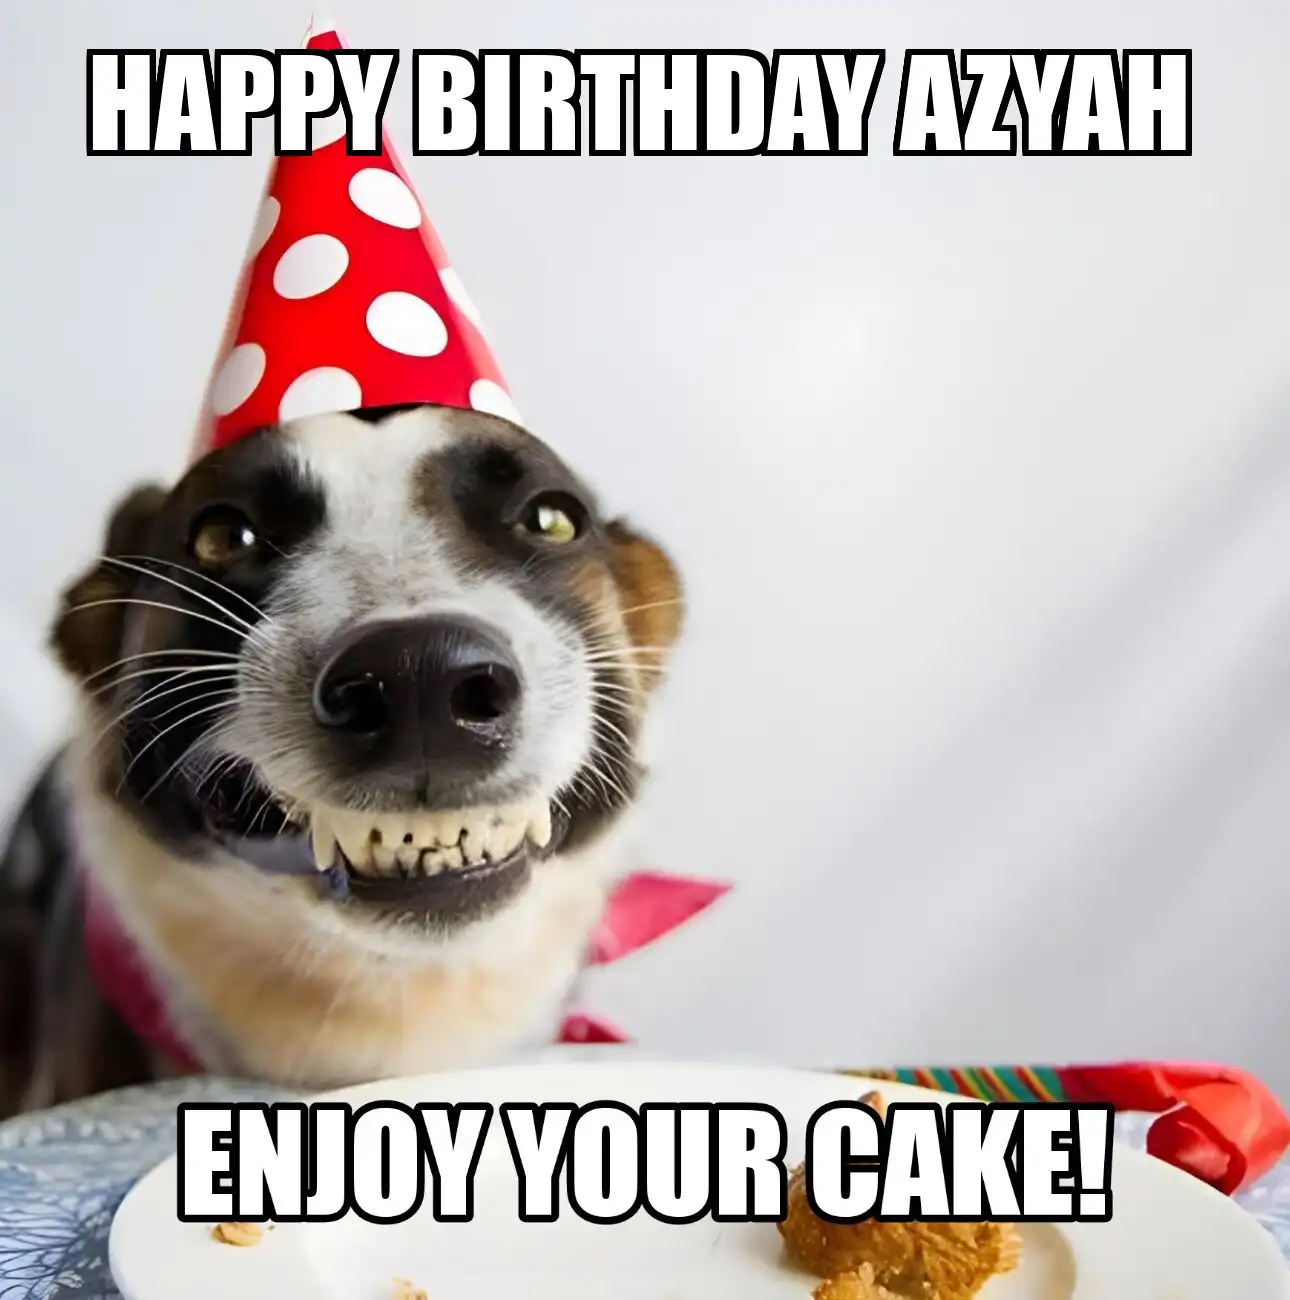 Happy Birthday Azyah Enjoy Your Cake Dog Meme